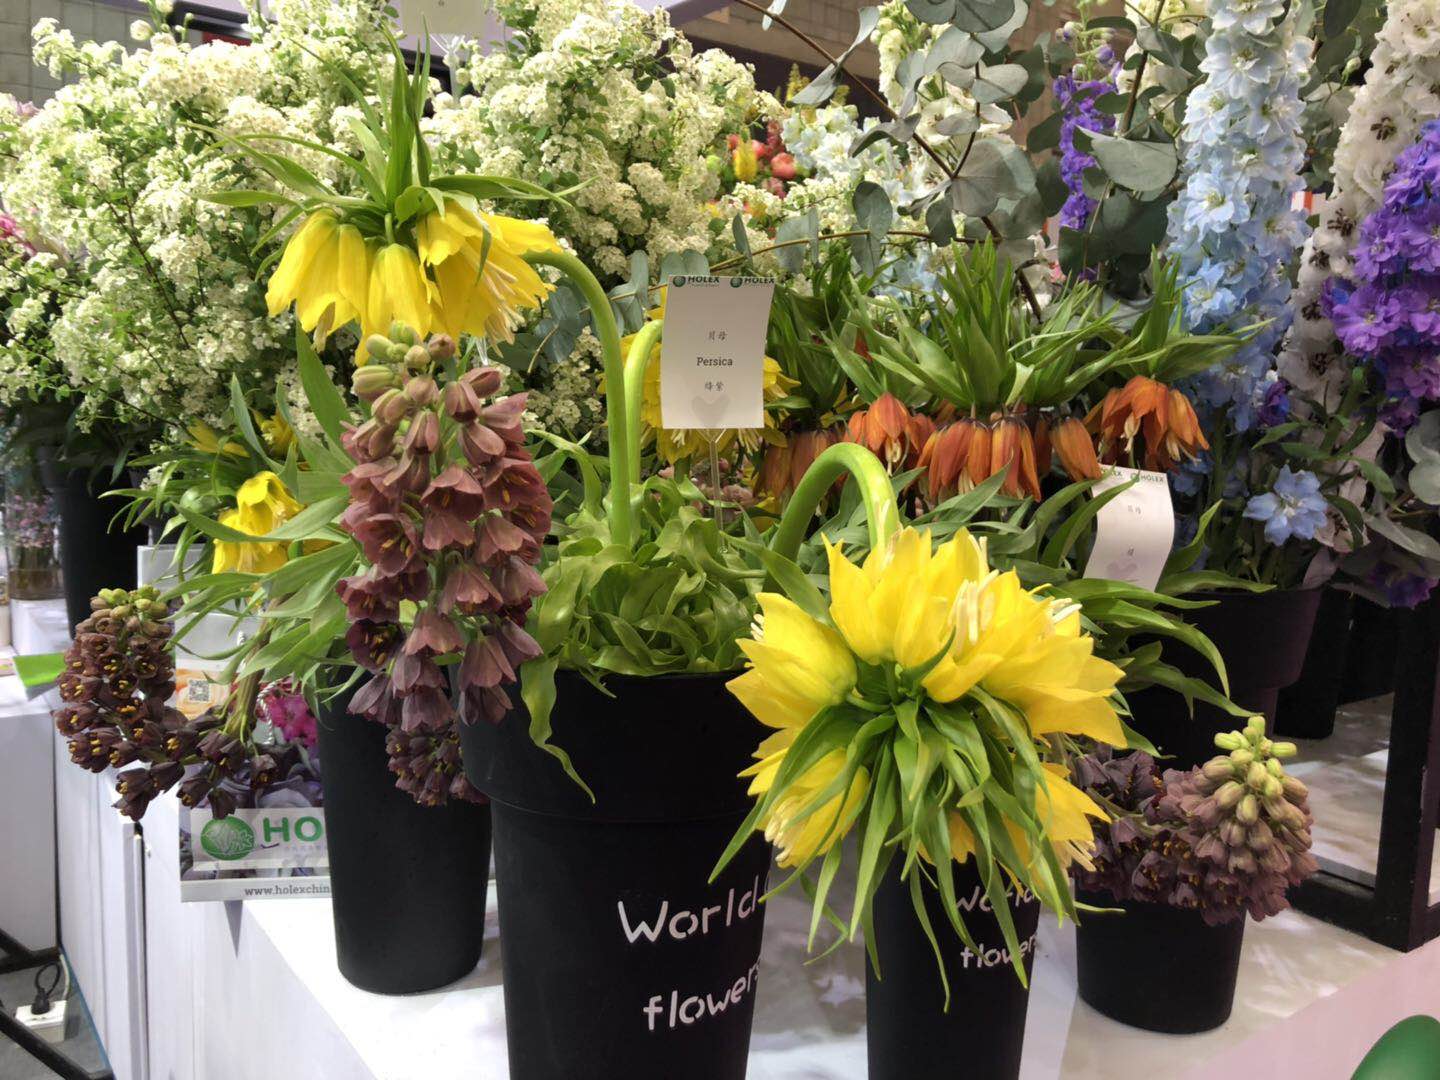 荷兰holex花卉出口公司 集全球高品质之花装扮中国消费者生活 国际果蔬报道